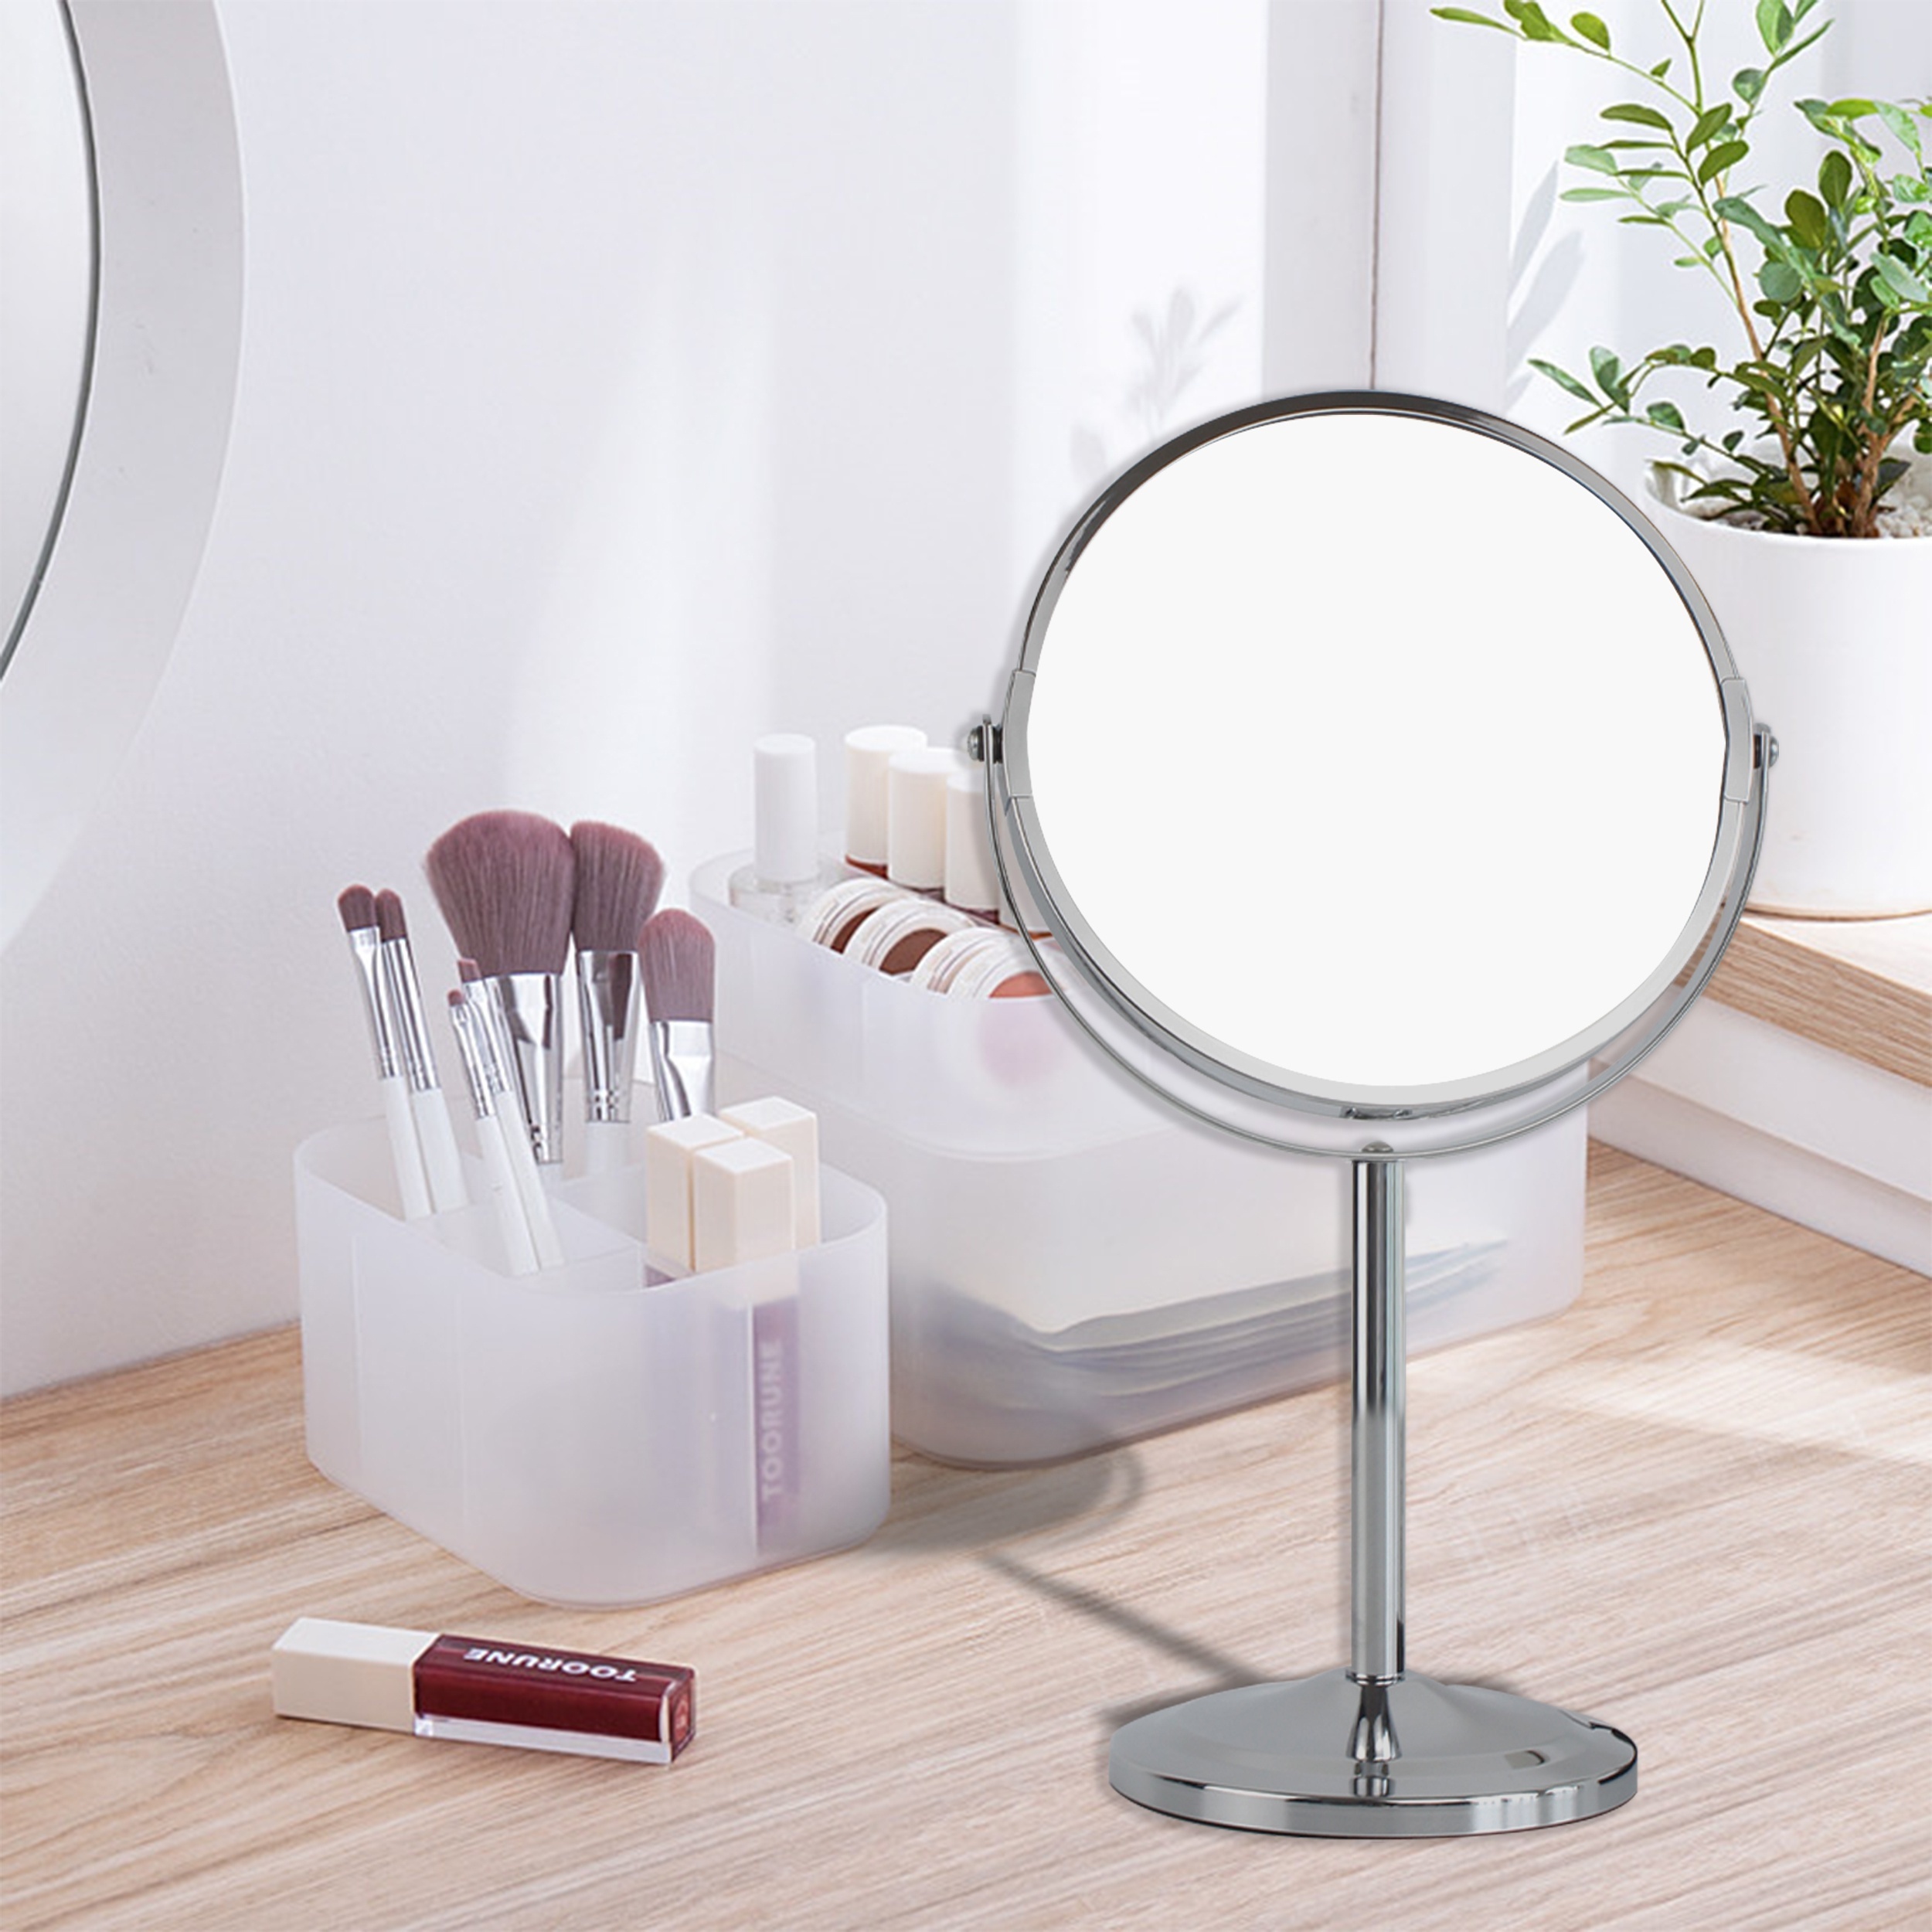 LYL] Espejo De Baño Con Pinzas Ventosa Desmontable 30X De Aumento  Maquillaje De Mano Suministros